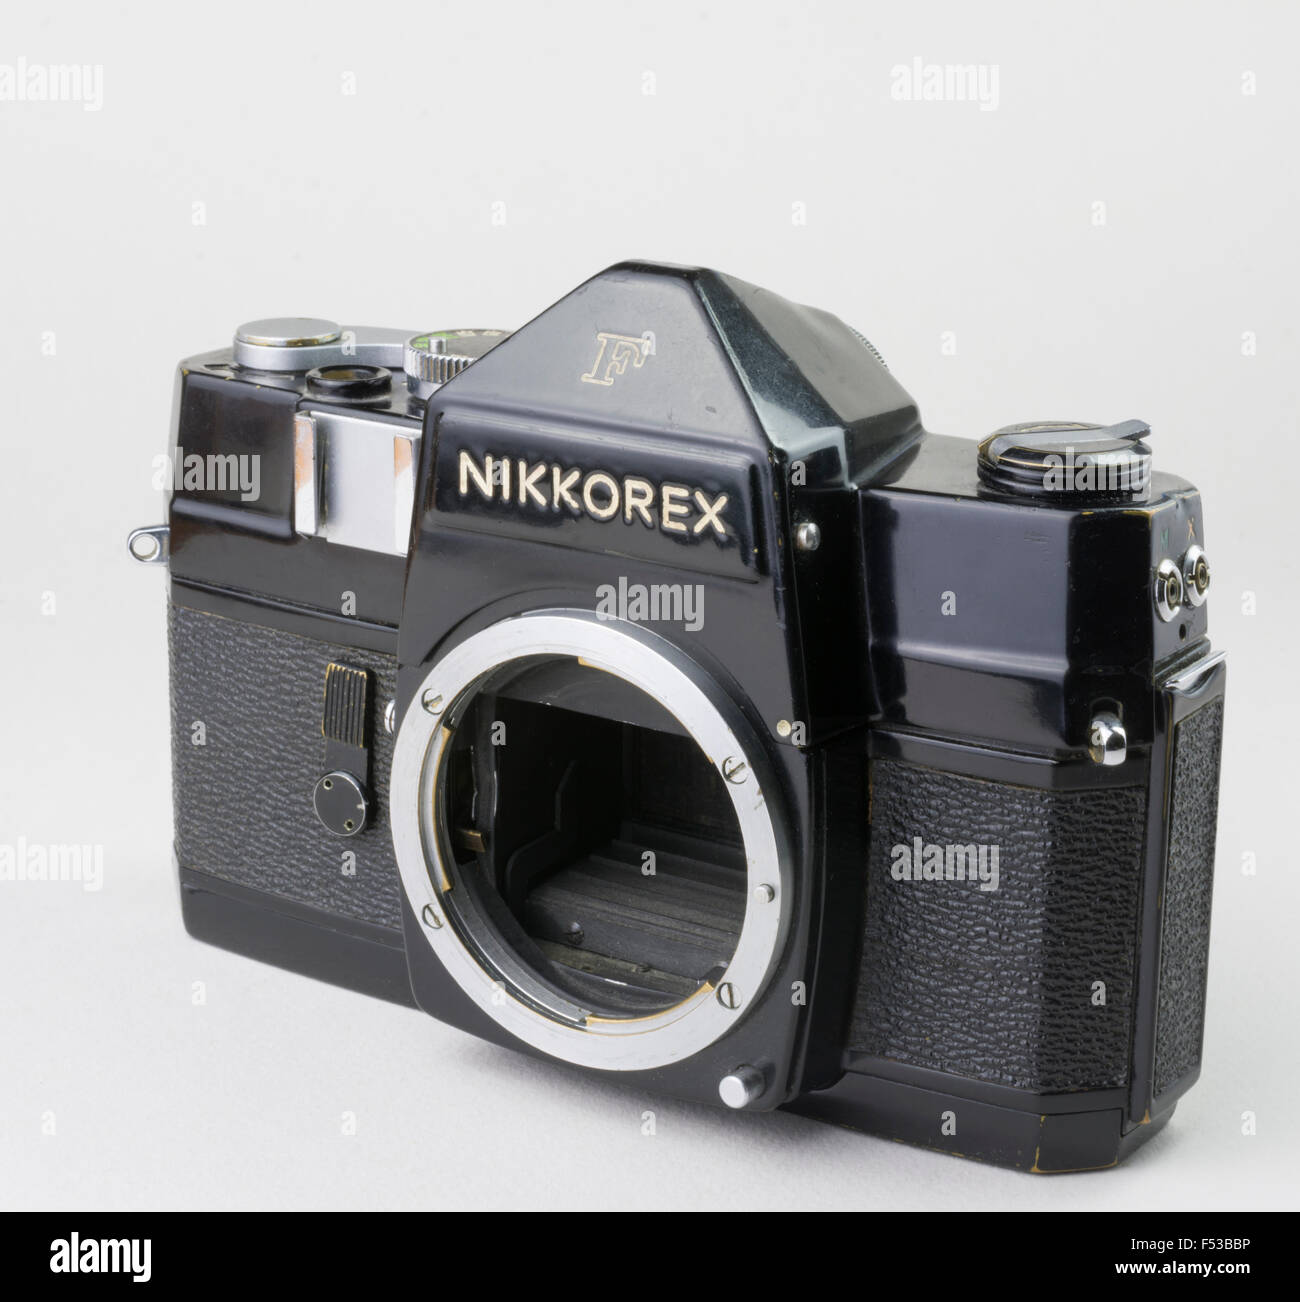 Nikkorex f Banque de photographies et d'images à haute résolution - Alamy